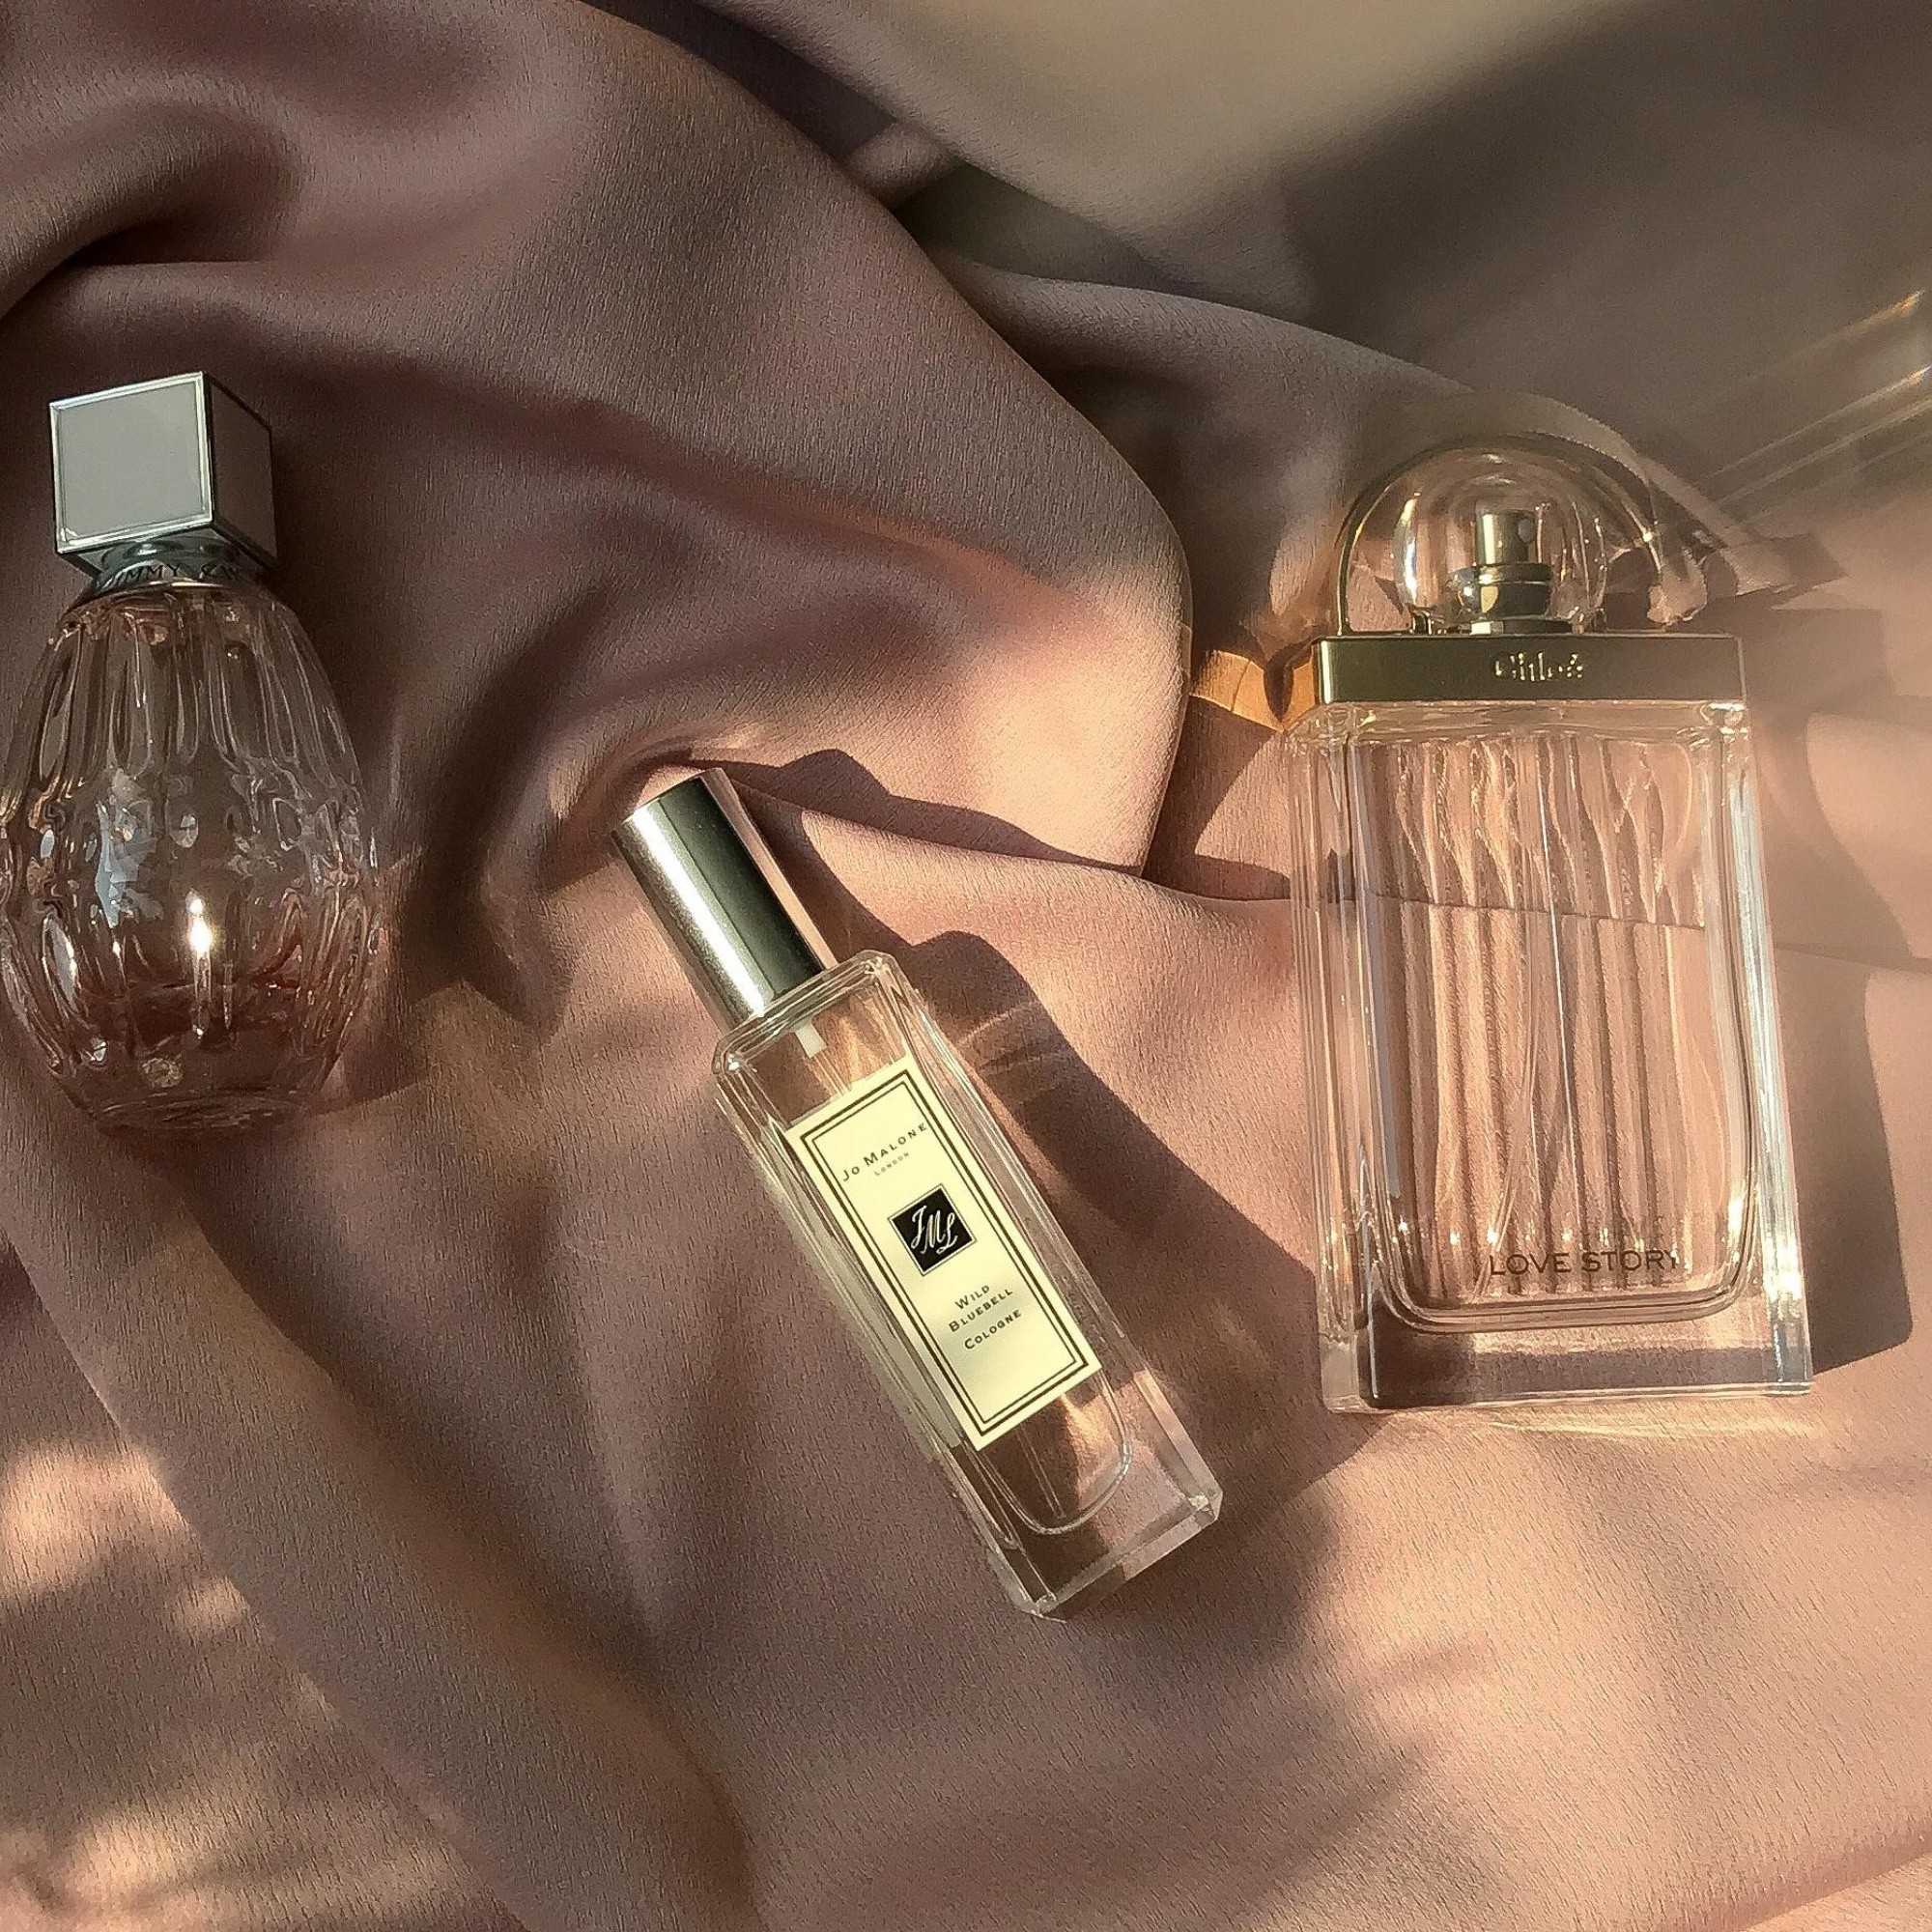 Experto en perfumería revela las 5 mejores fragancias para mujeres